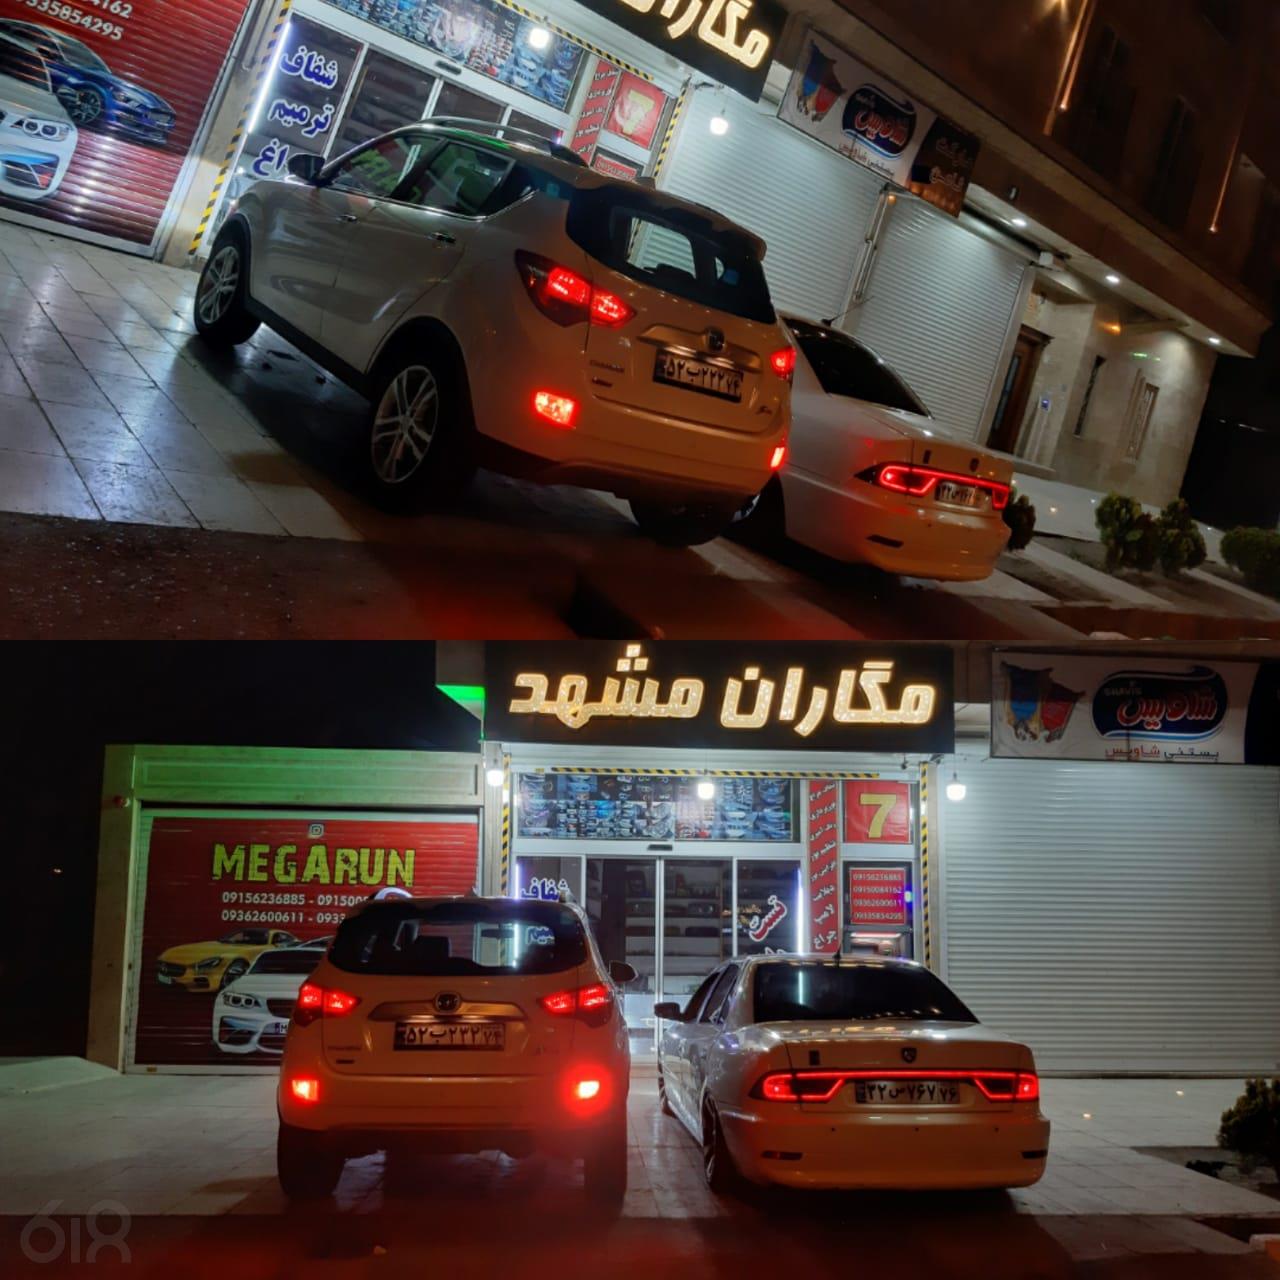 خدمات اتومبیل مگاران مشهد